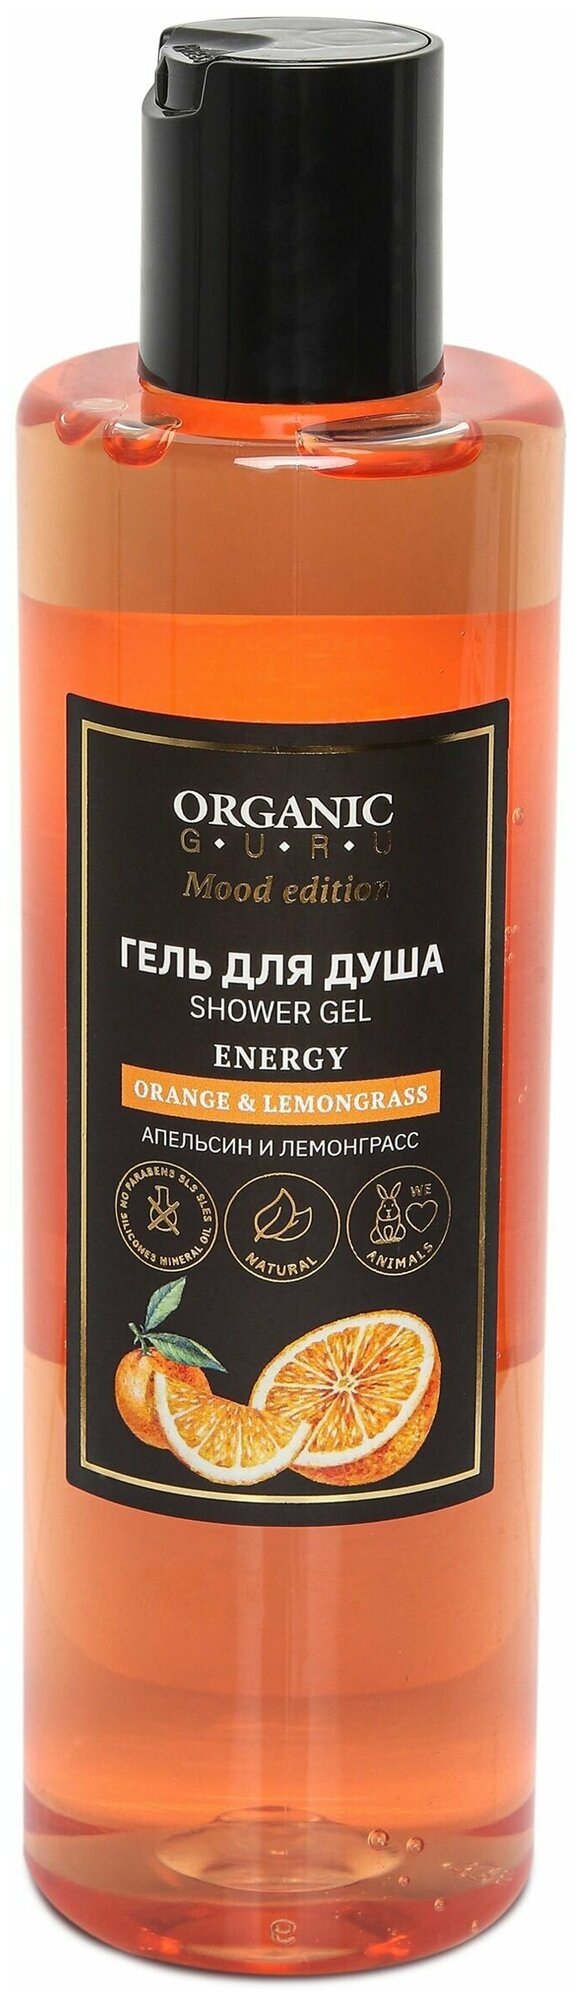 Organic Guru Гель для душа "Апельсин и Лемонграсс" Органик Гуру Без SLS и парабенов, без силикона, бессульфатный, 250 мл.